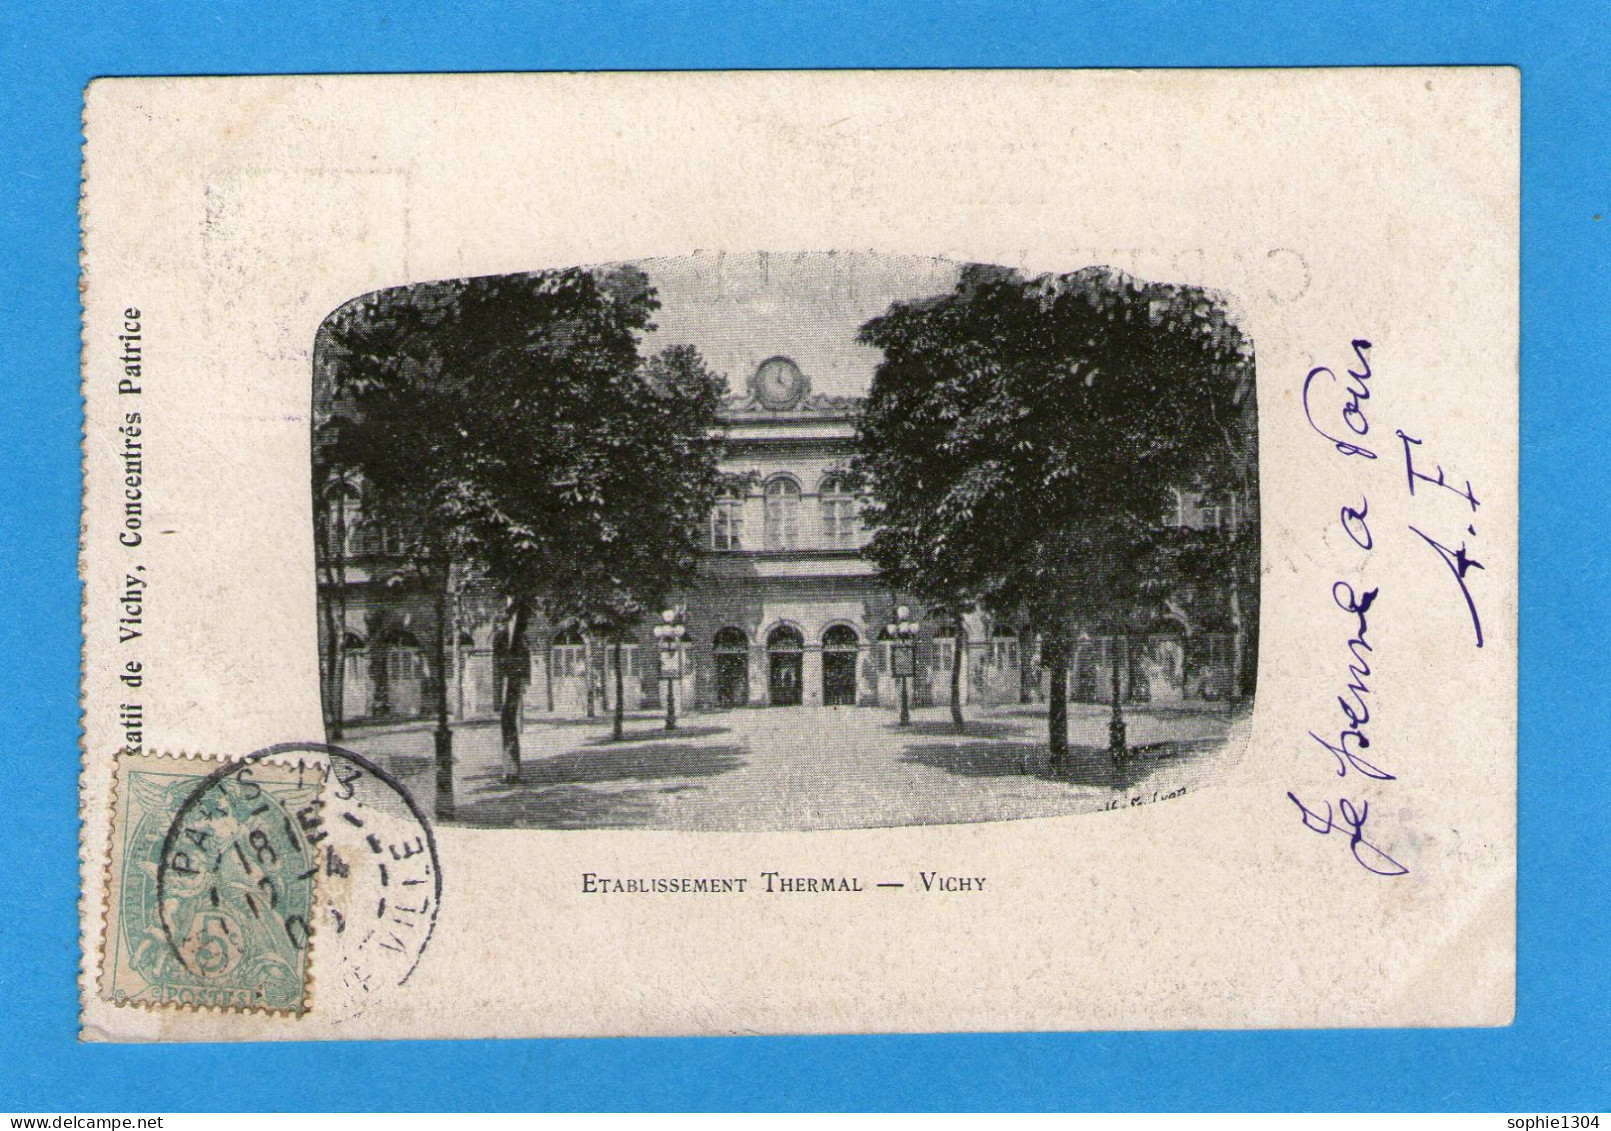 VICHY - Etablissement Thermal - 1906 - Vichy